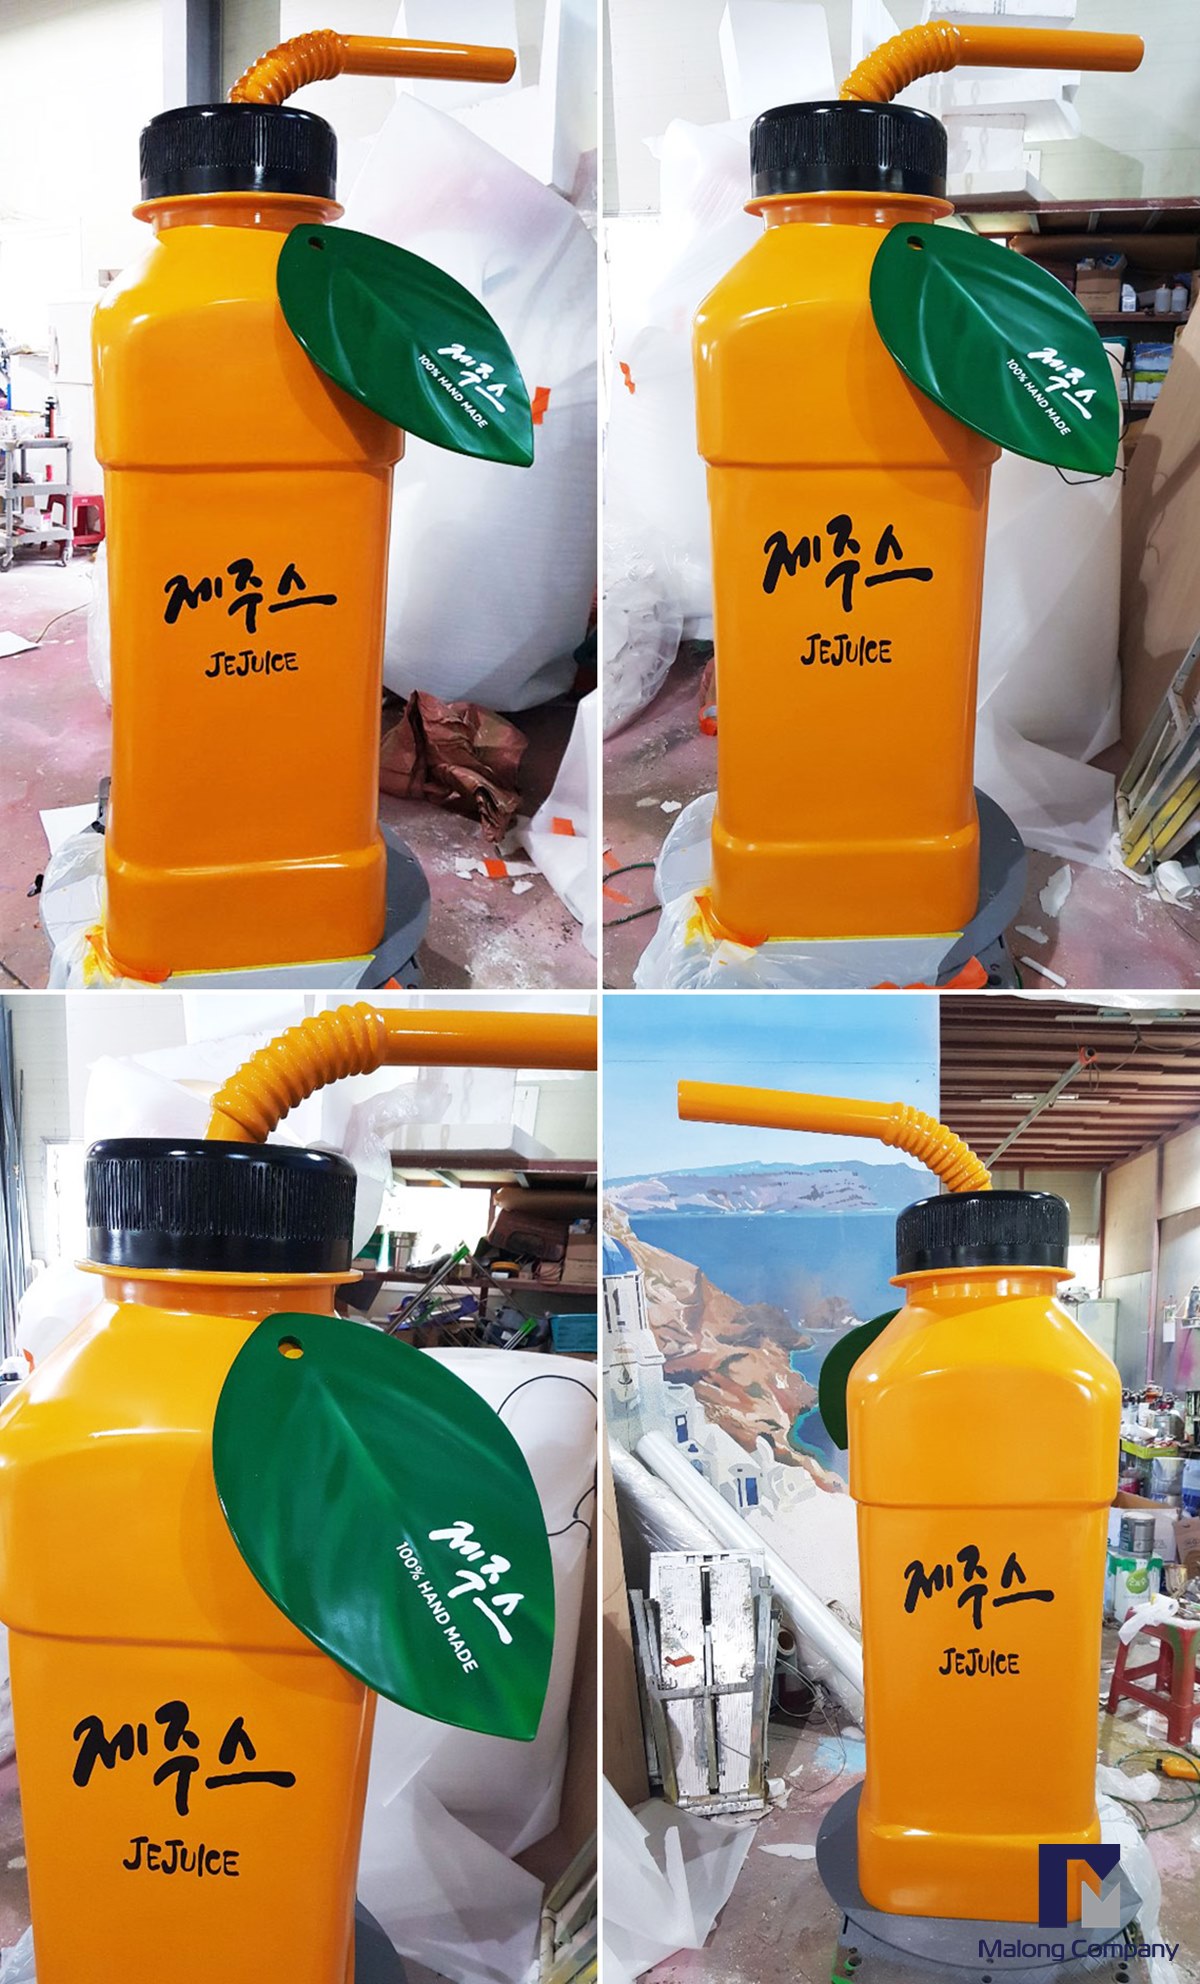 [FRP 음료병 모형] 제주 감귤쥬스병 조형물 제작